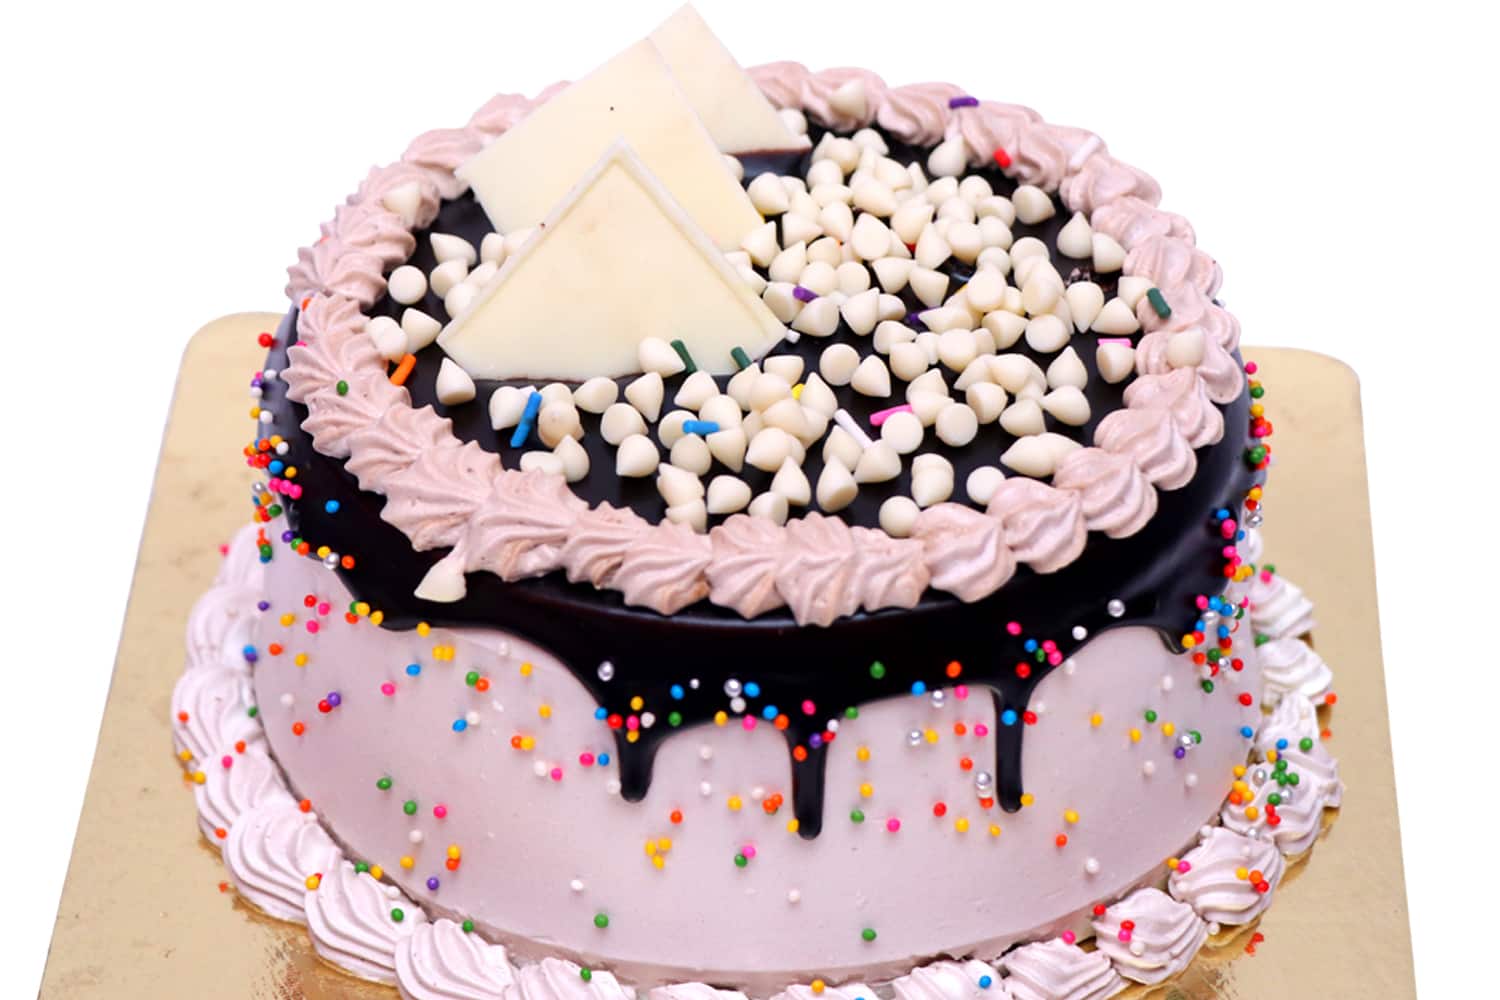 Aggregate 80+ order 250 gm cake online super hot - in.daotaonec